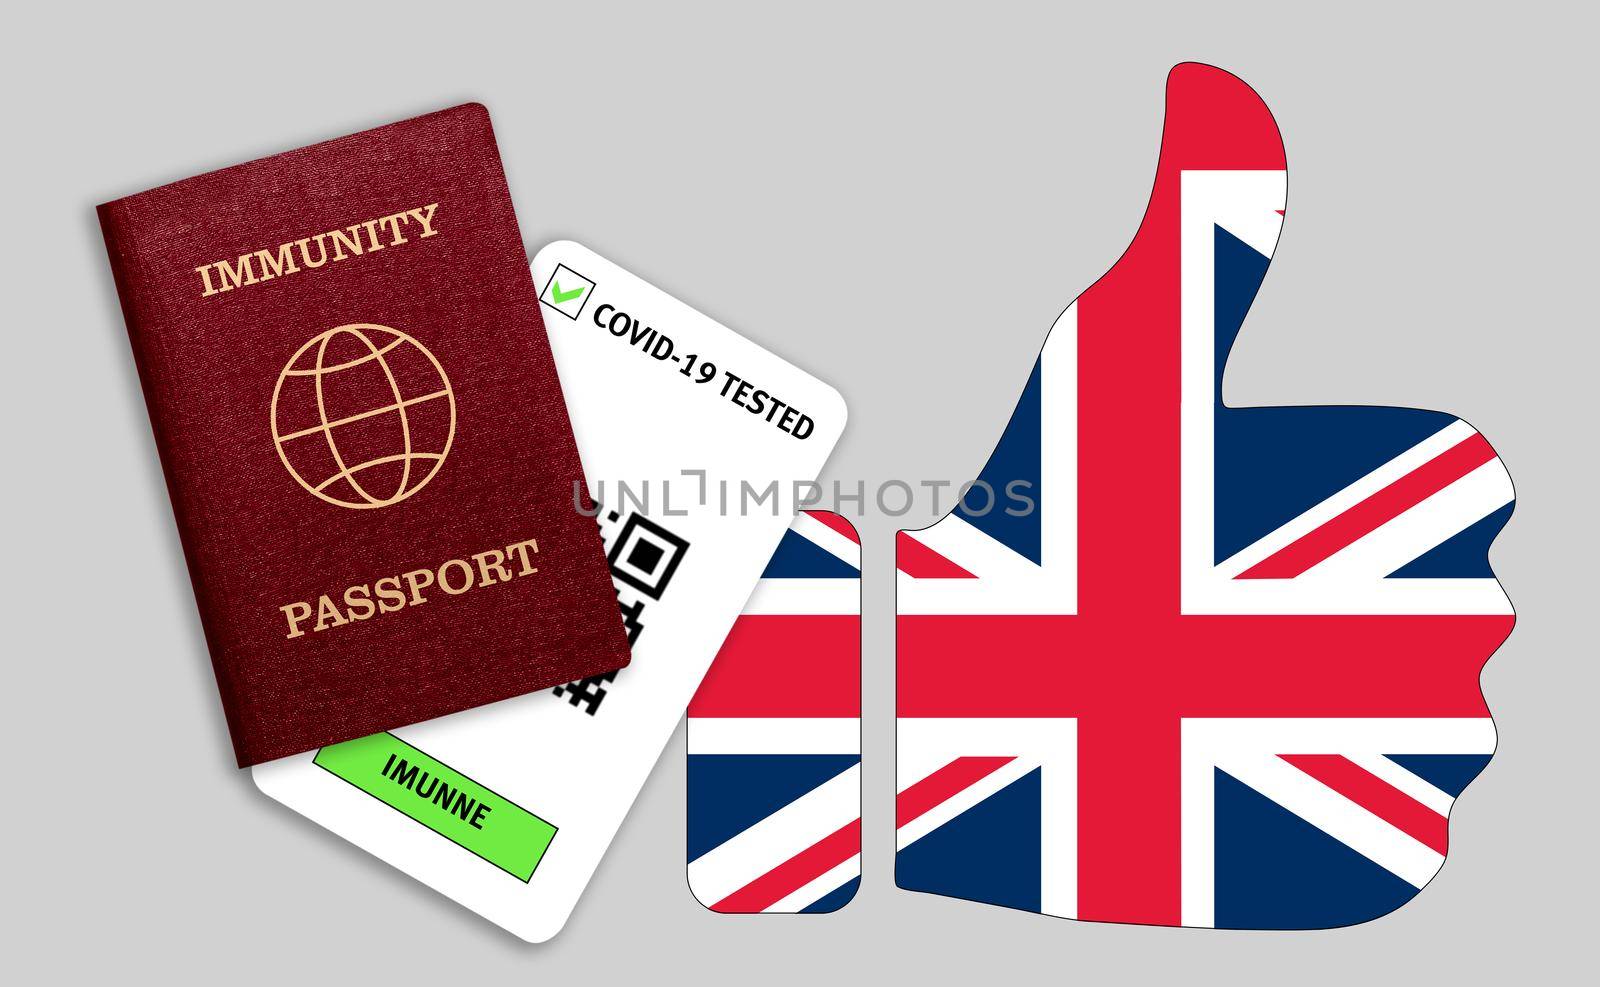 Immune passport and coronavirus test with thumb up with flag of United Kingdom by galinasharapova